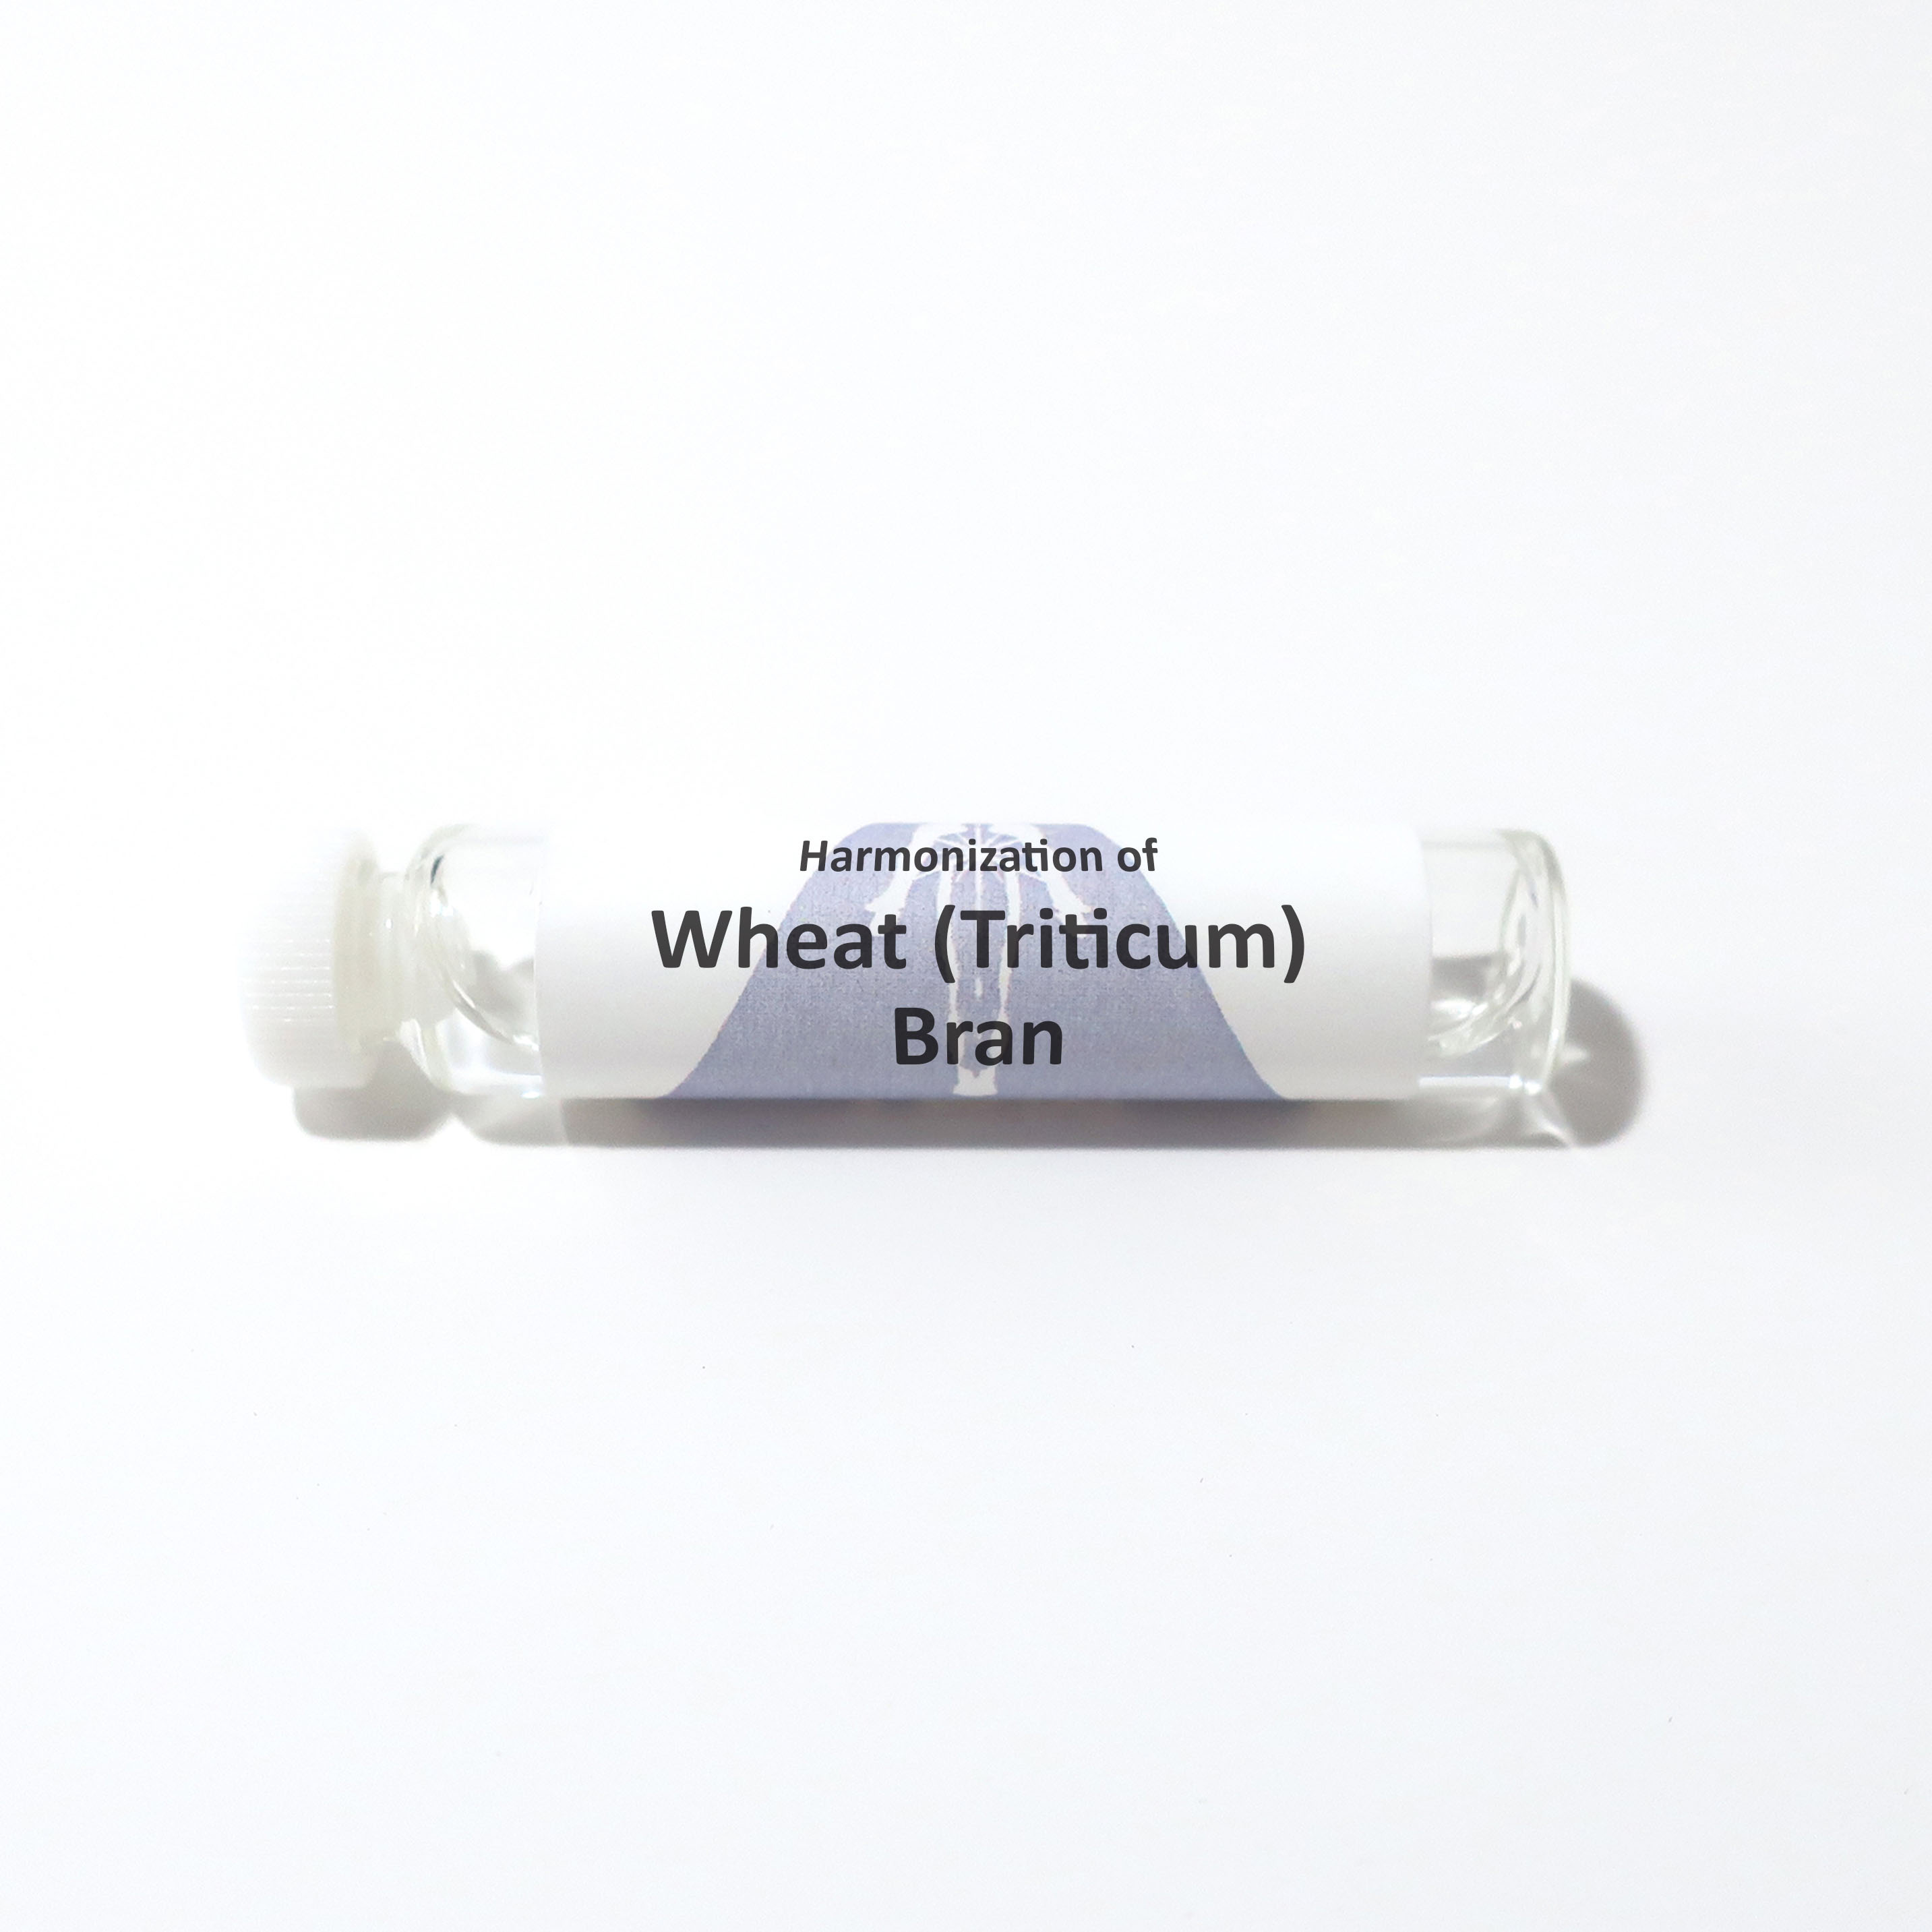 Wheat (Triticum) Bran